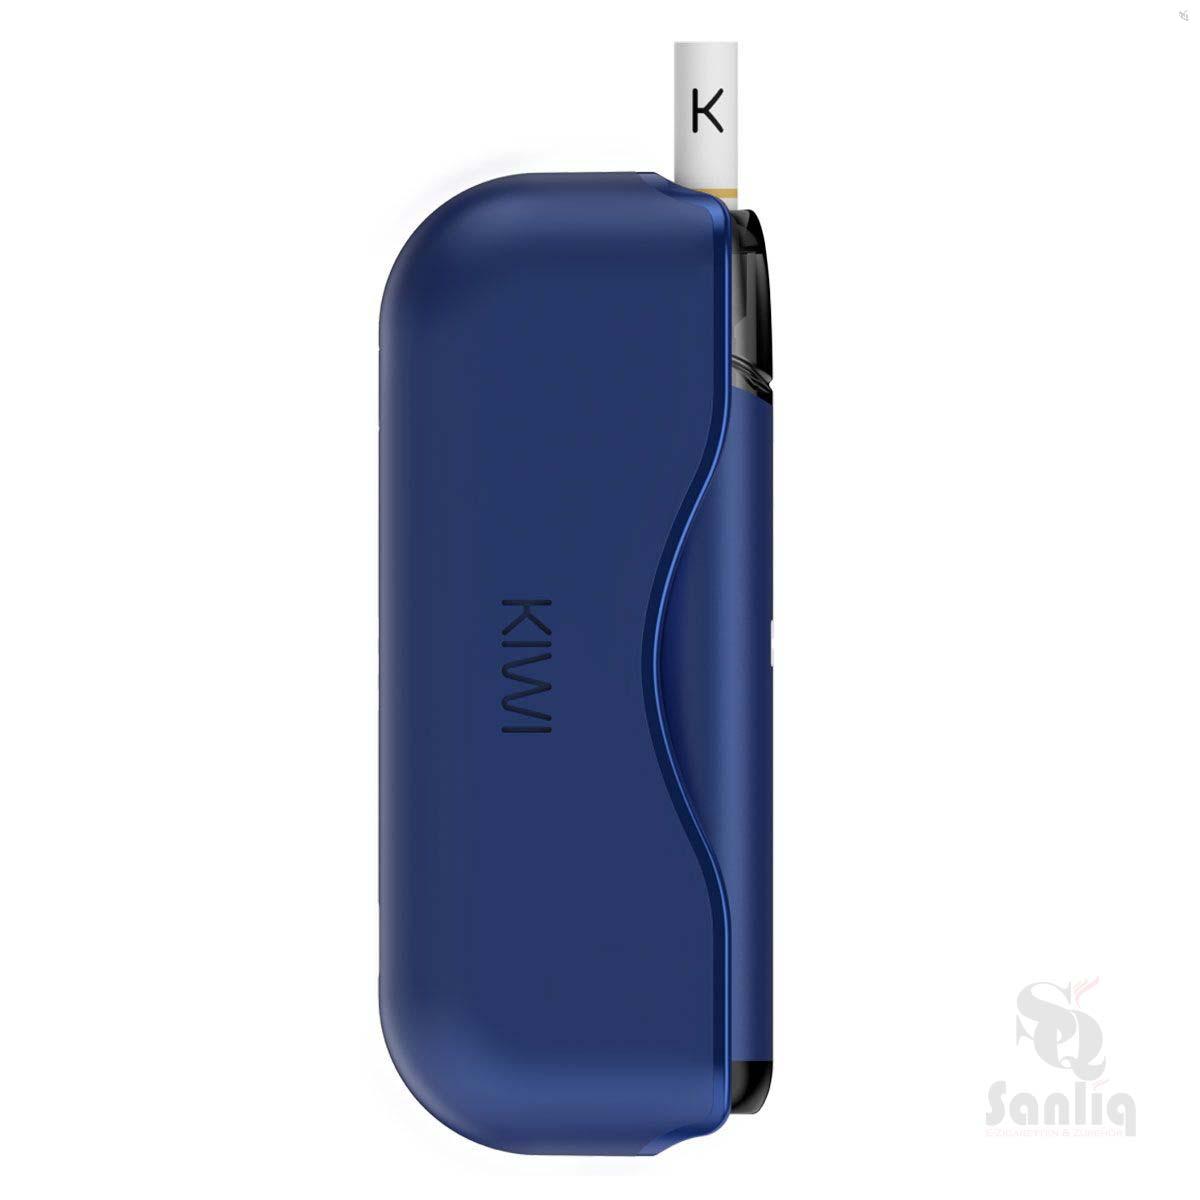 KIWI Starter-Kit Navy Blue ✅ Günstig kaufen! 